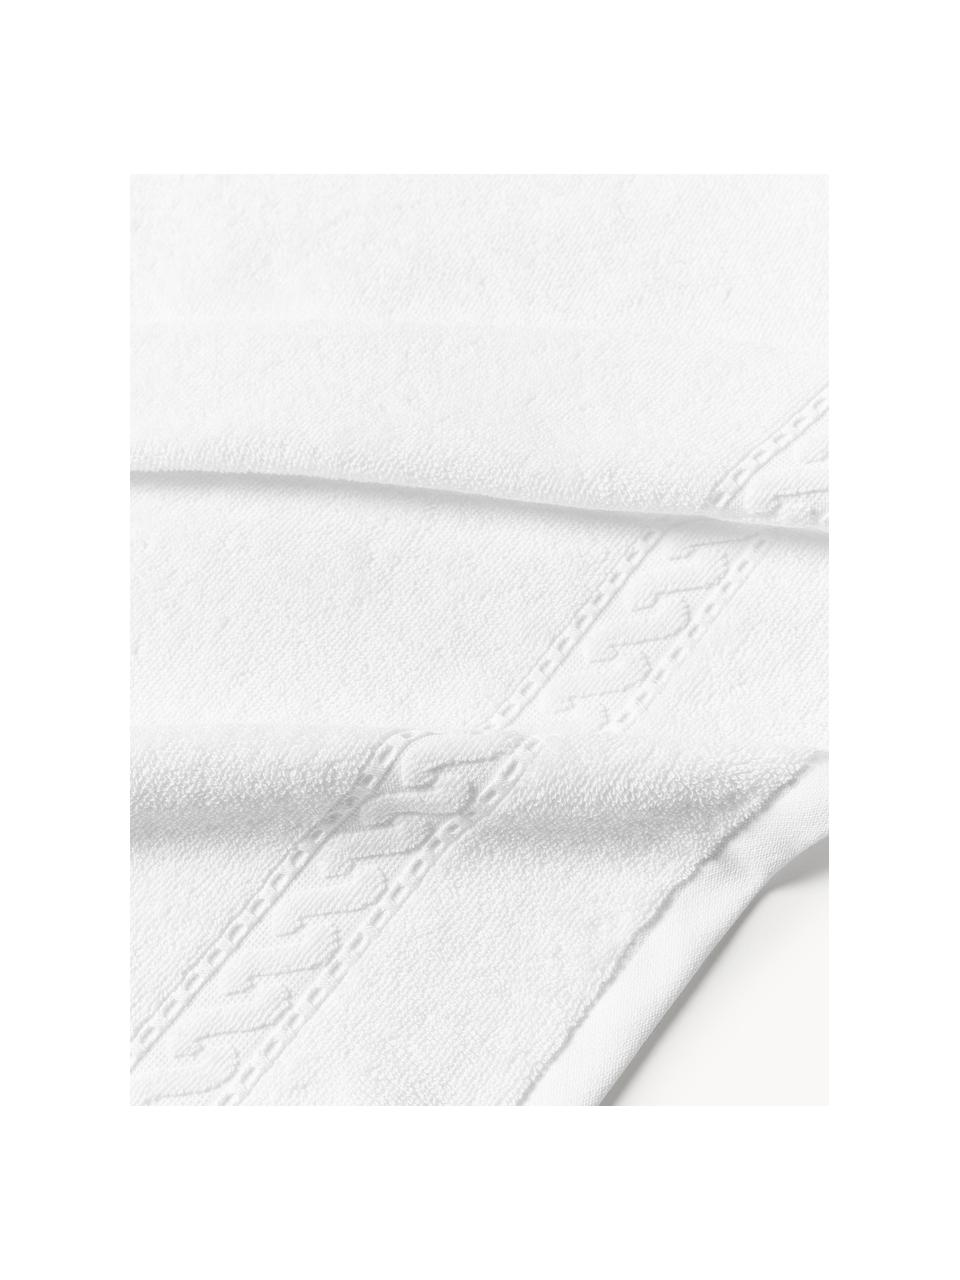 Handtuch Cordelia in verschiedenen Größen, 100 % Baumwolle, Weiß, Handtuch, B 50 x L 100 cm, 2 Stück